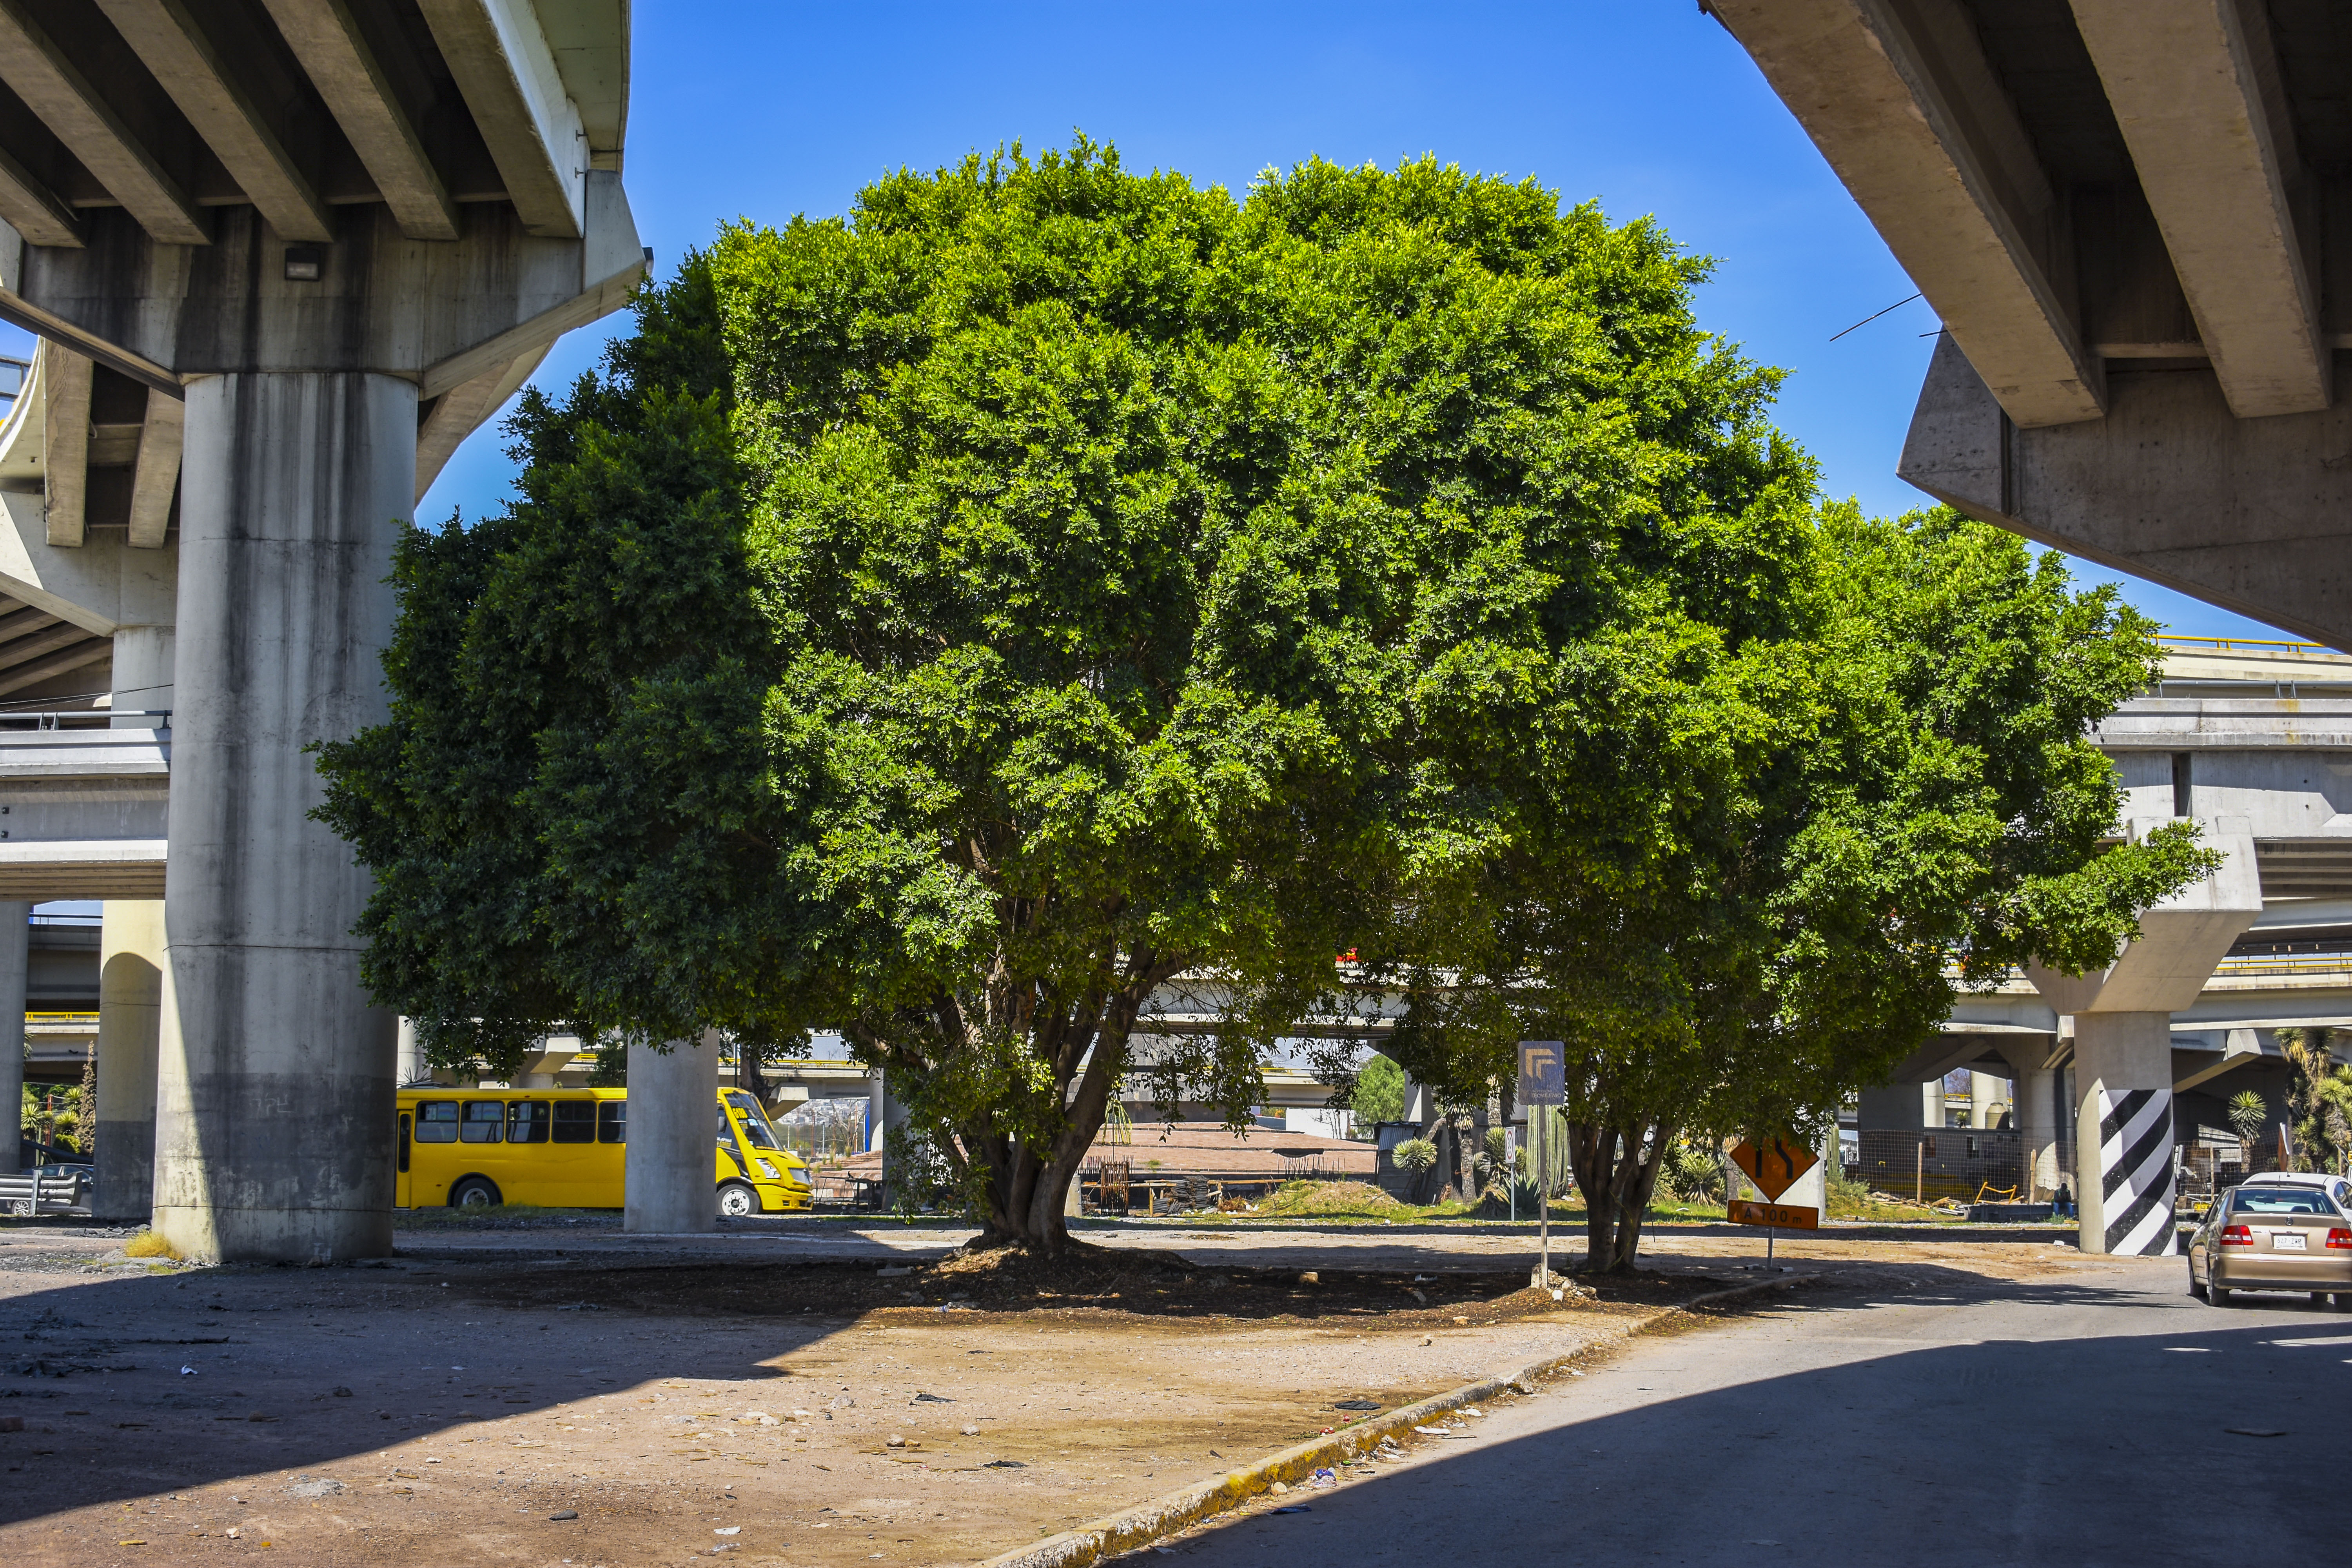 Otorgan nombre a los dos árboles amparados en el distribuir Juárez